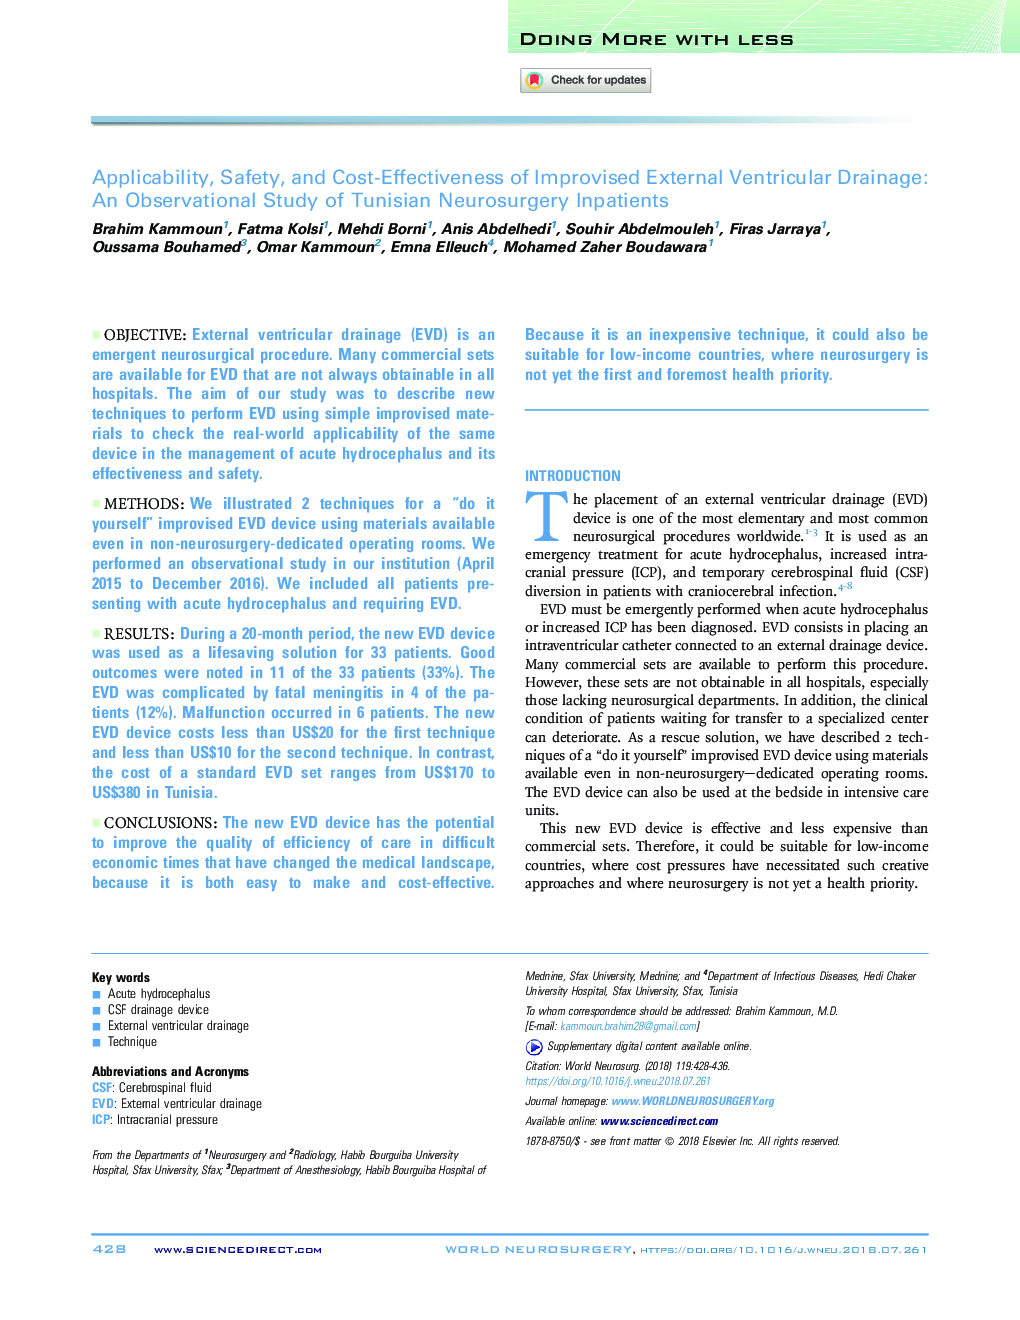 کاربرد، ایمنی و هزینه-اثربخشی زهکشی بیرونی خارجی بهبود یافته: مطالعه ی مقدماتی بستری در بخش جراحی مغز و اعصاب تونس